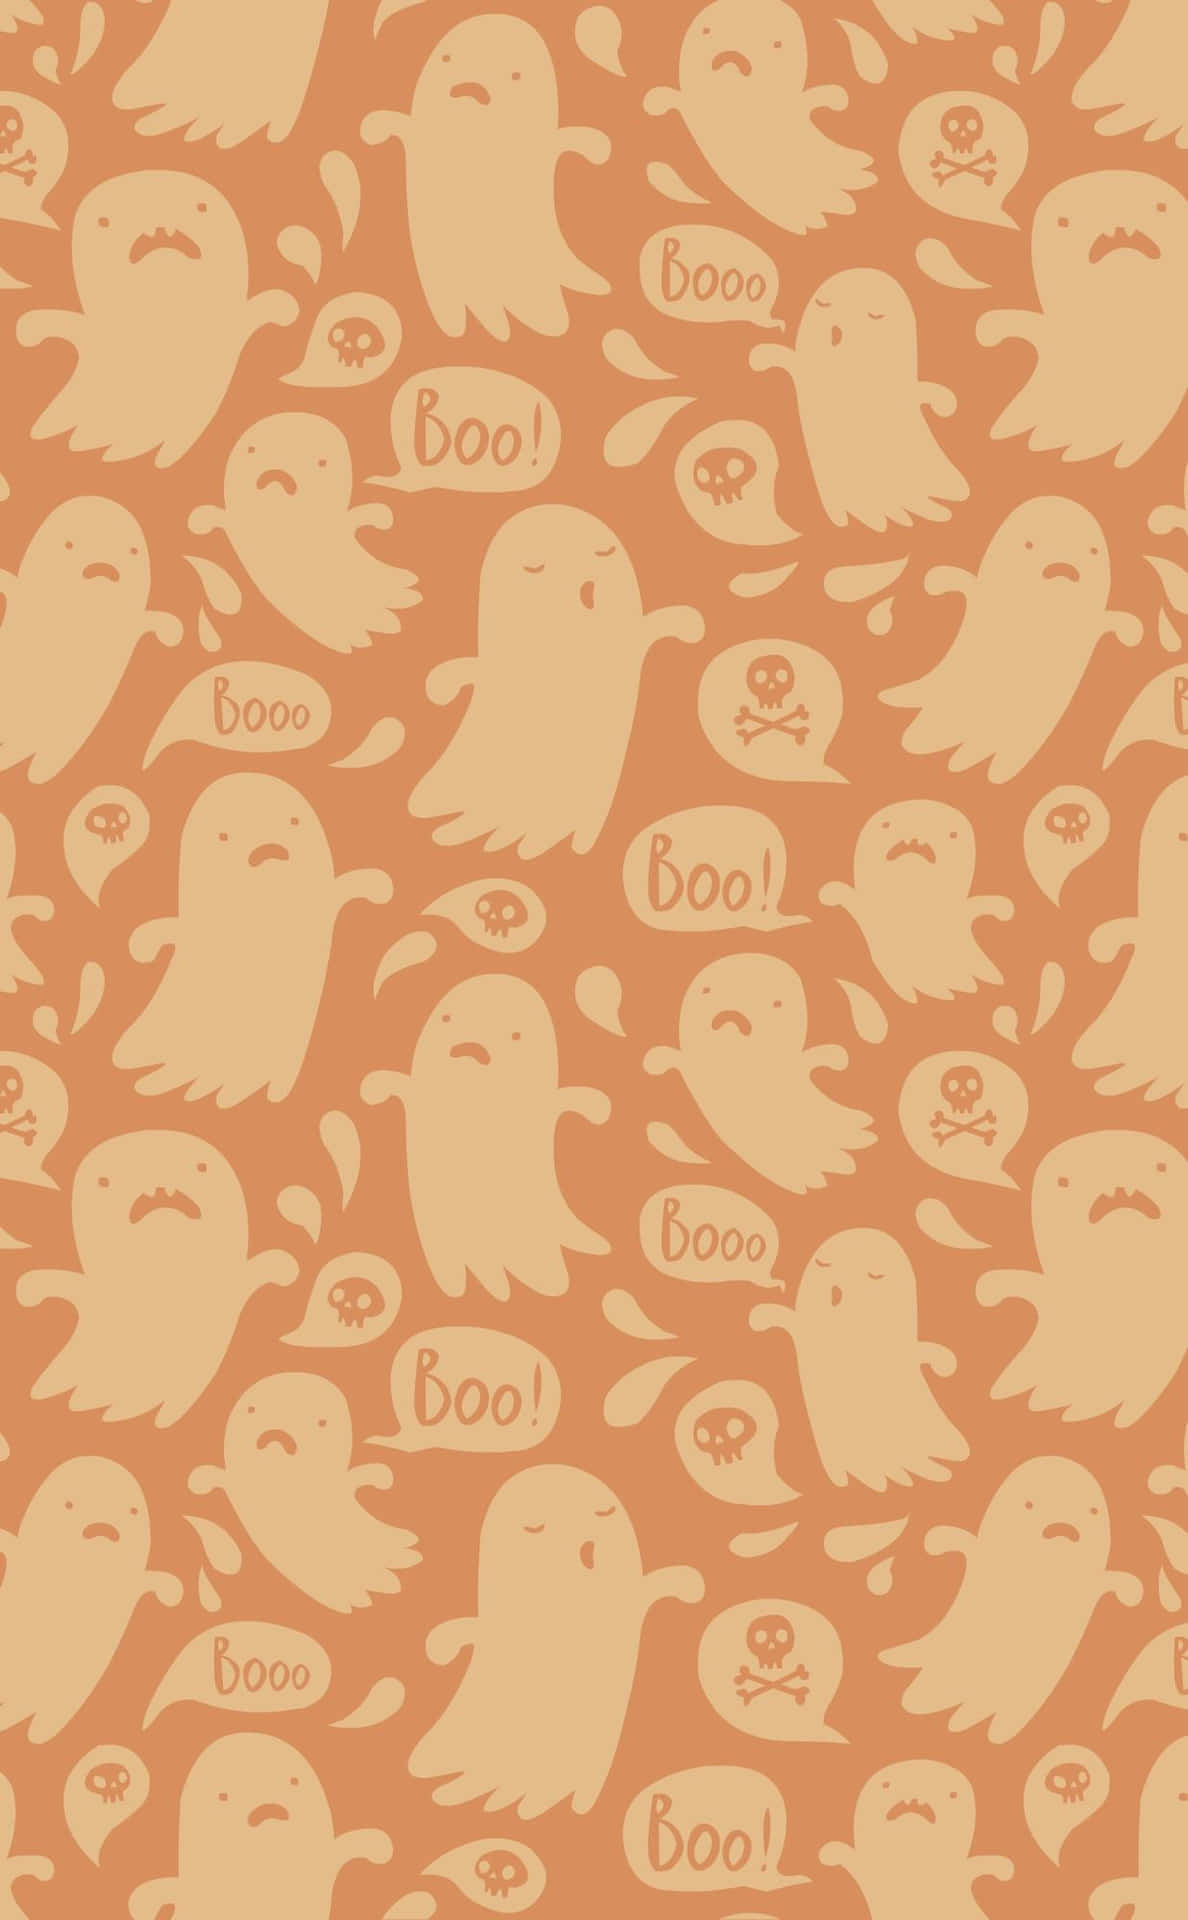 Halloweenniedliches Boo! Gruseliger Geister Digitalbild